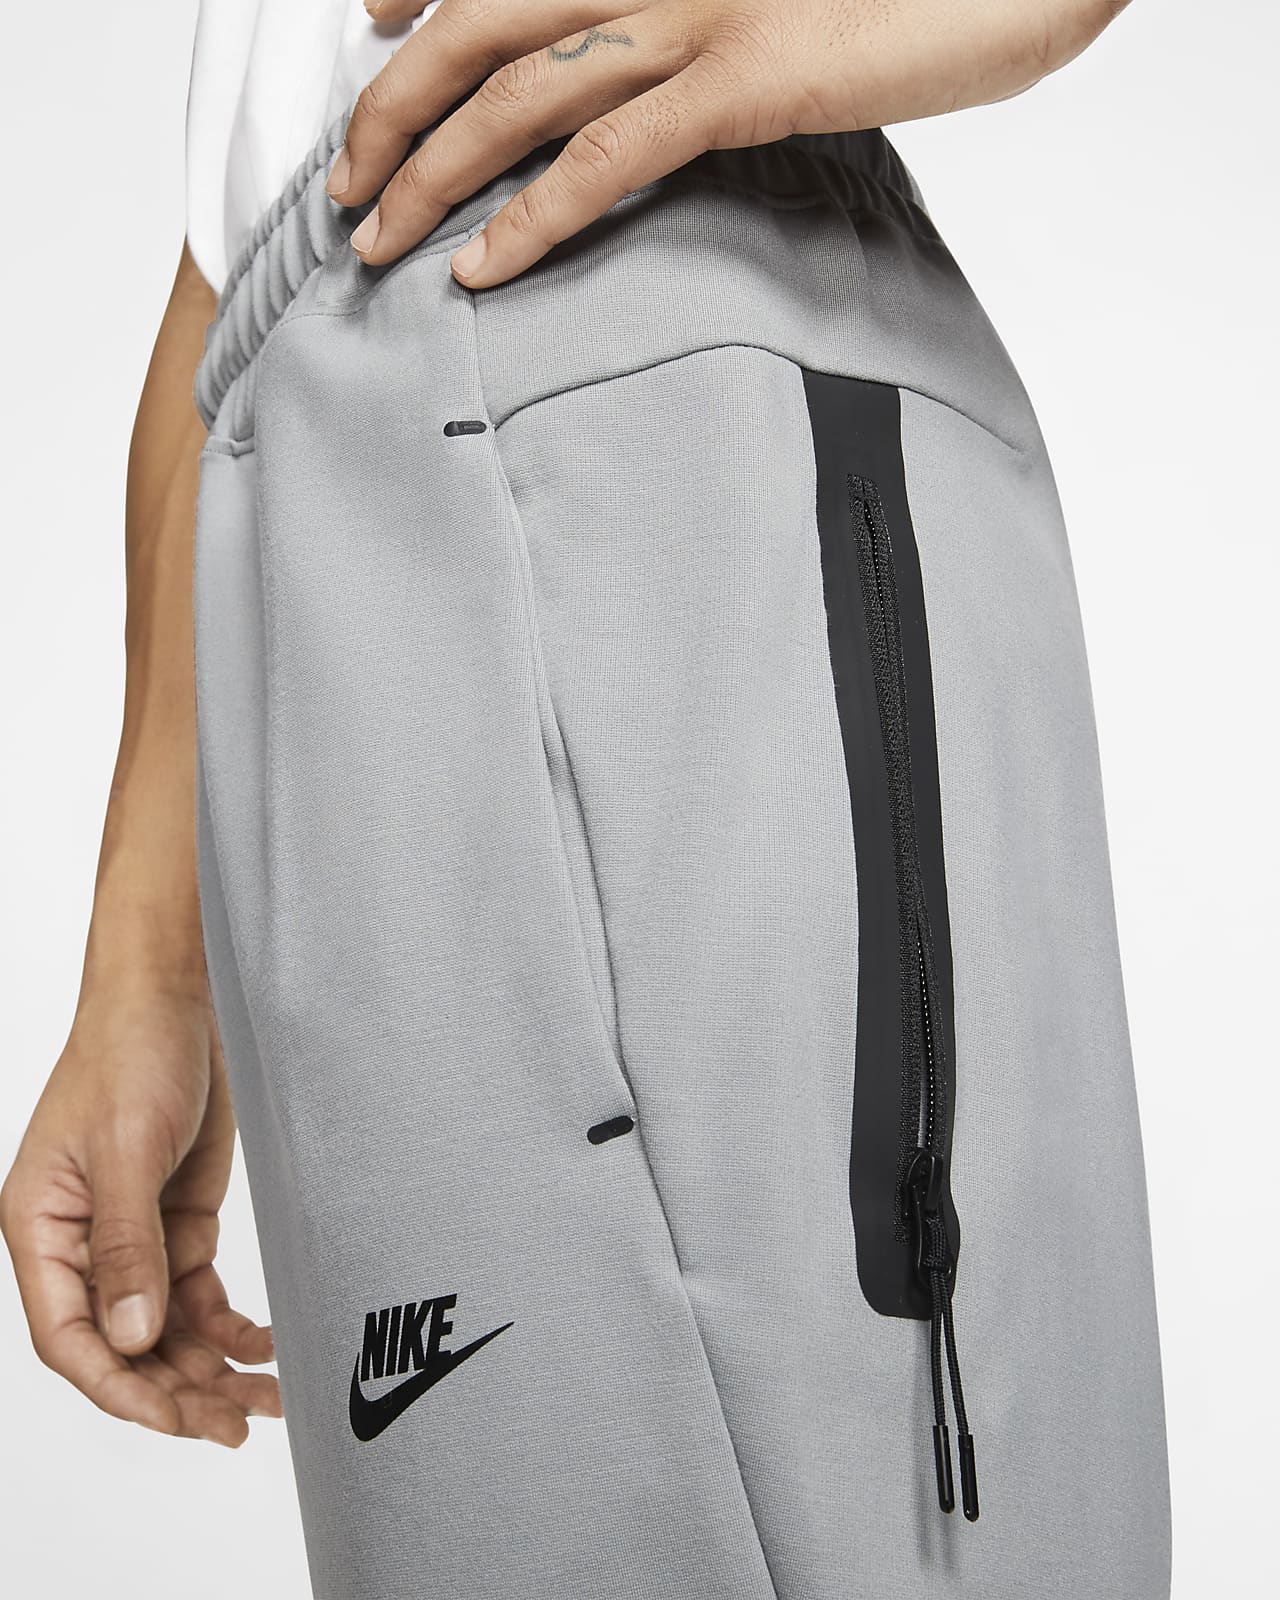 Nike Sportswear Men's Joggers.